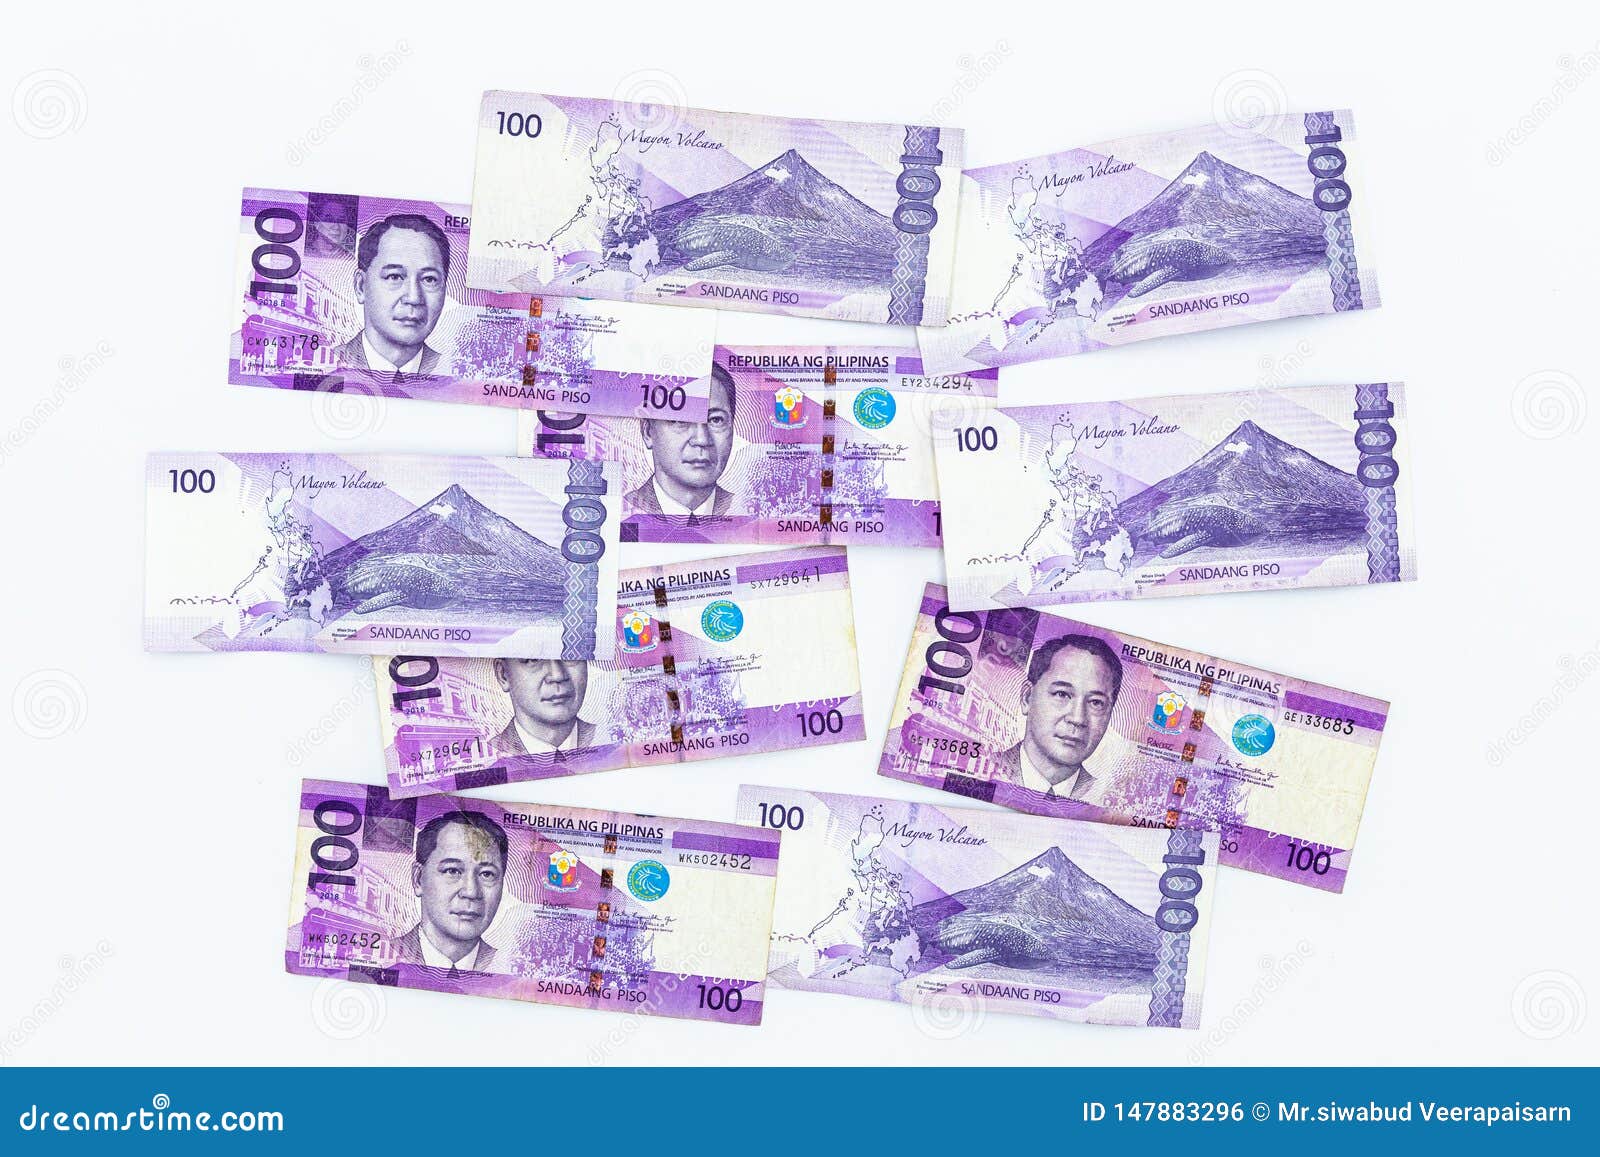 philippine 100 peso bill, philippines money currency, philippine money bills background